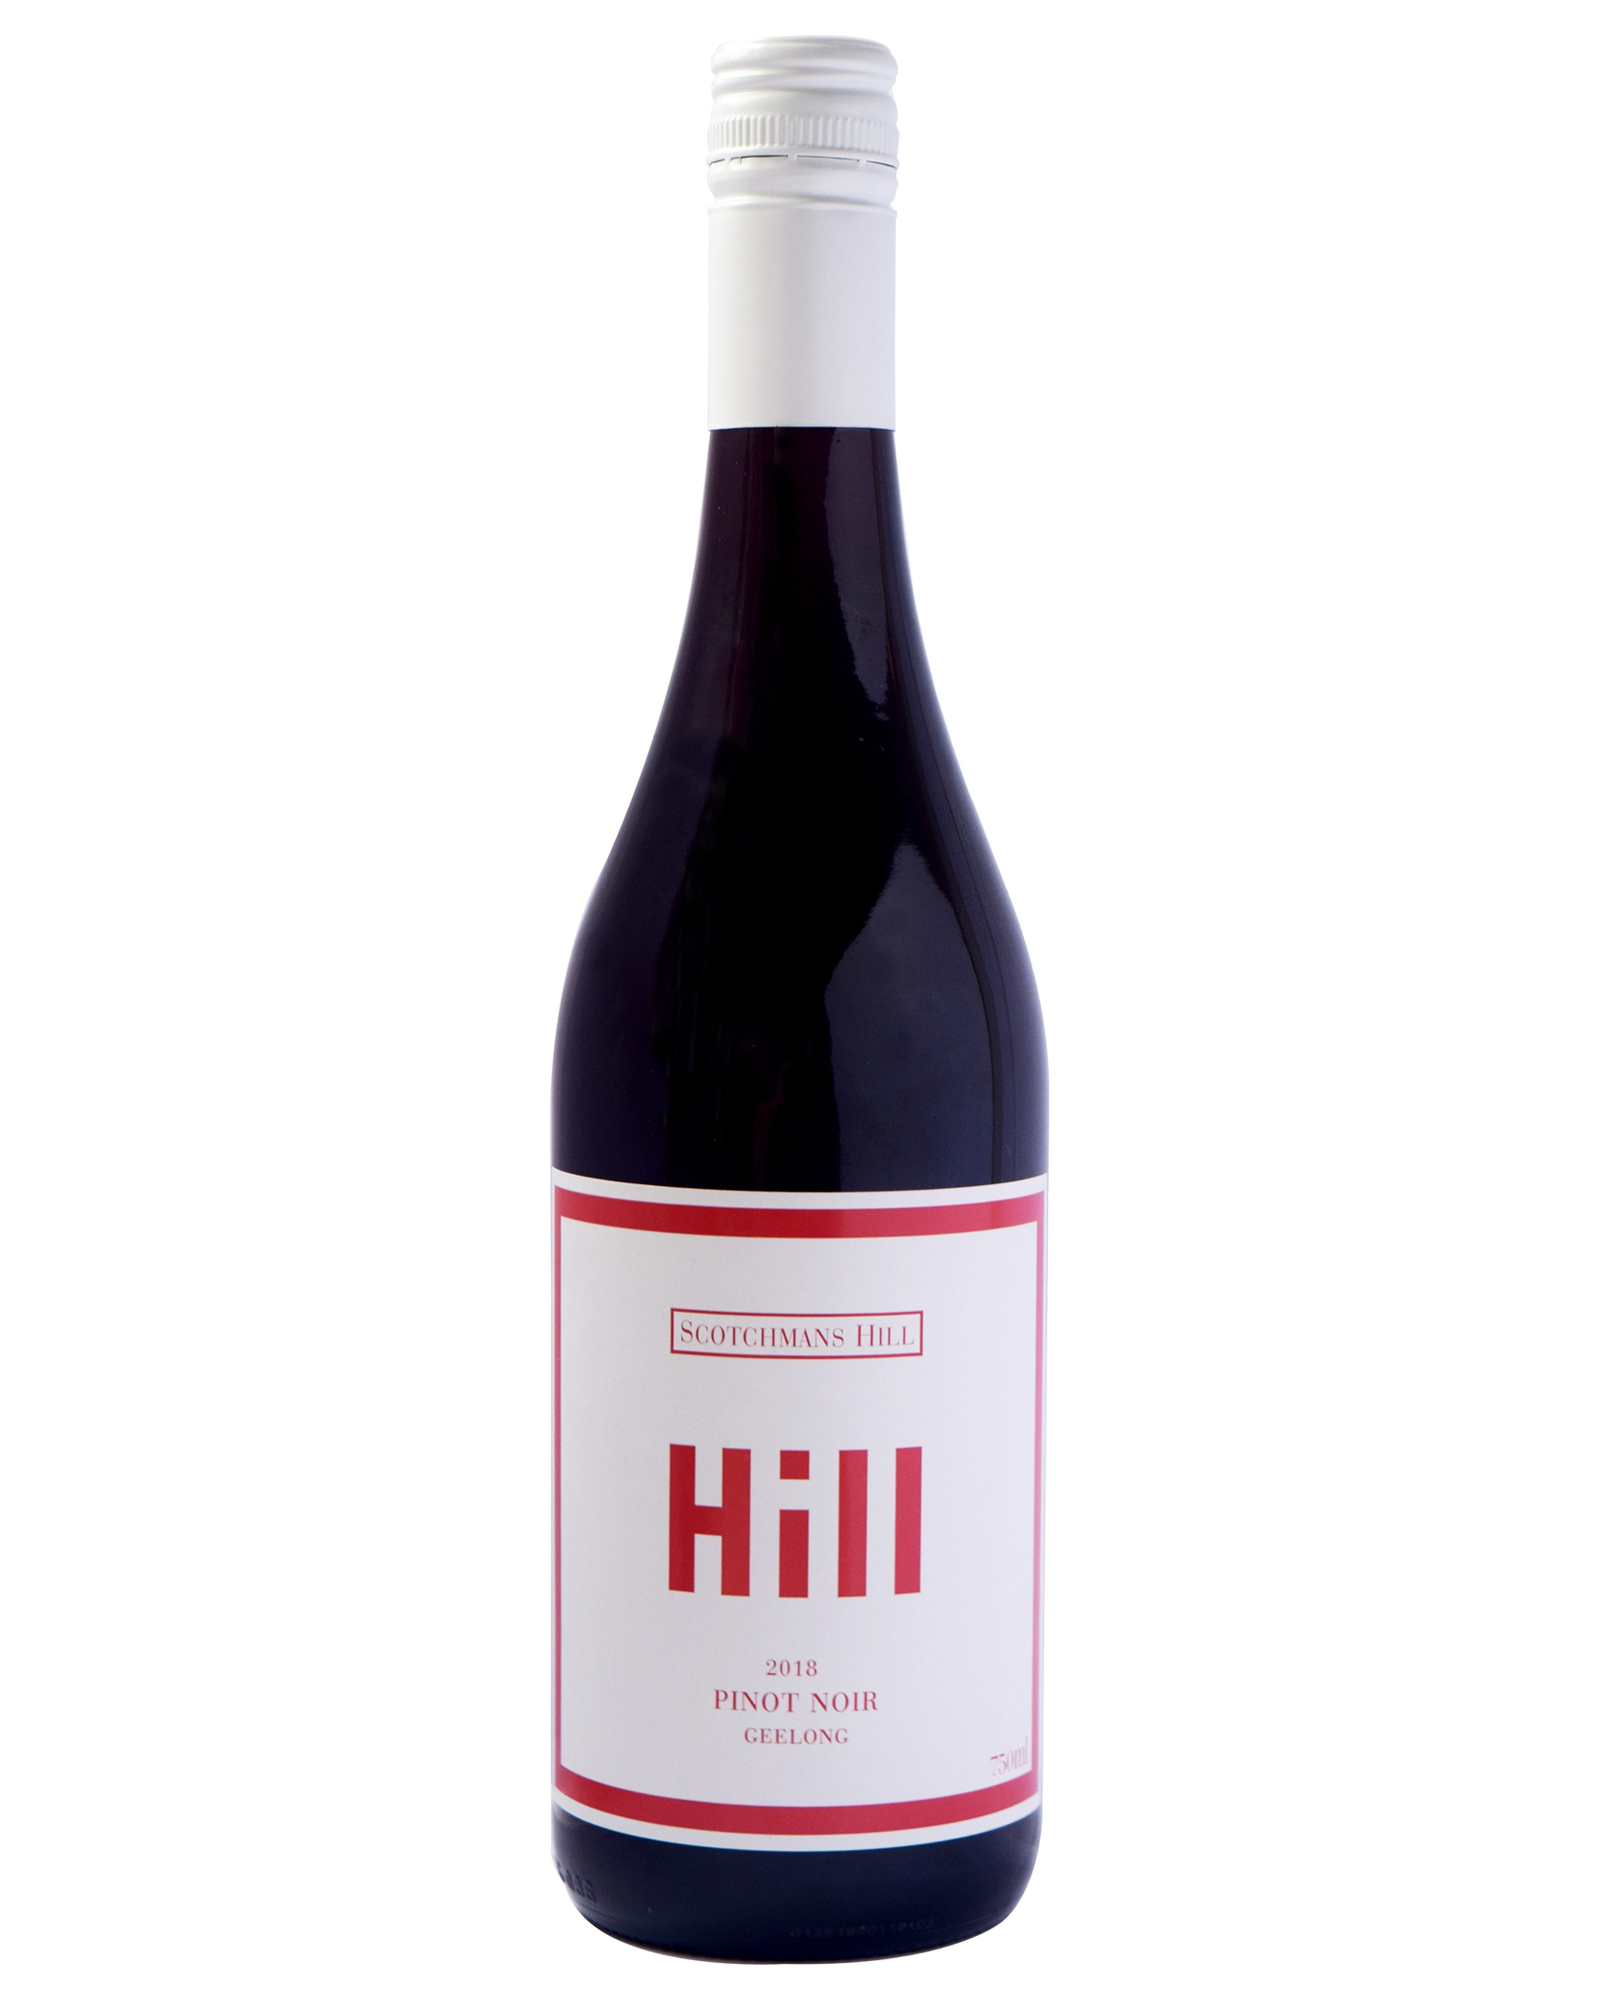 Scotchmans Hill The Hill Pinot Noir